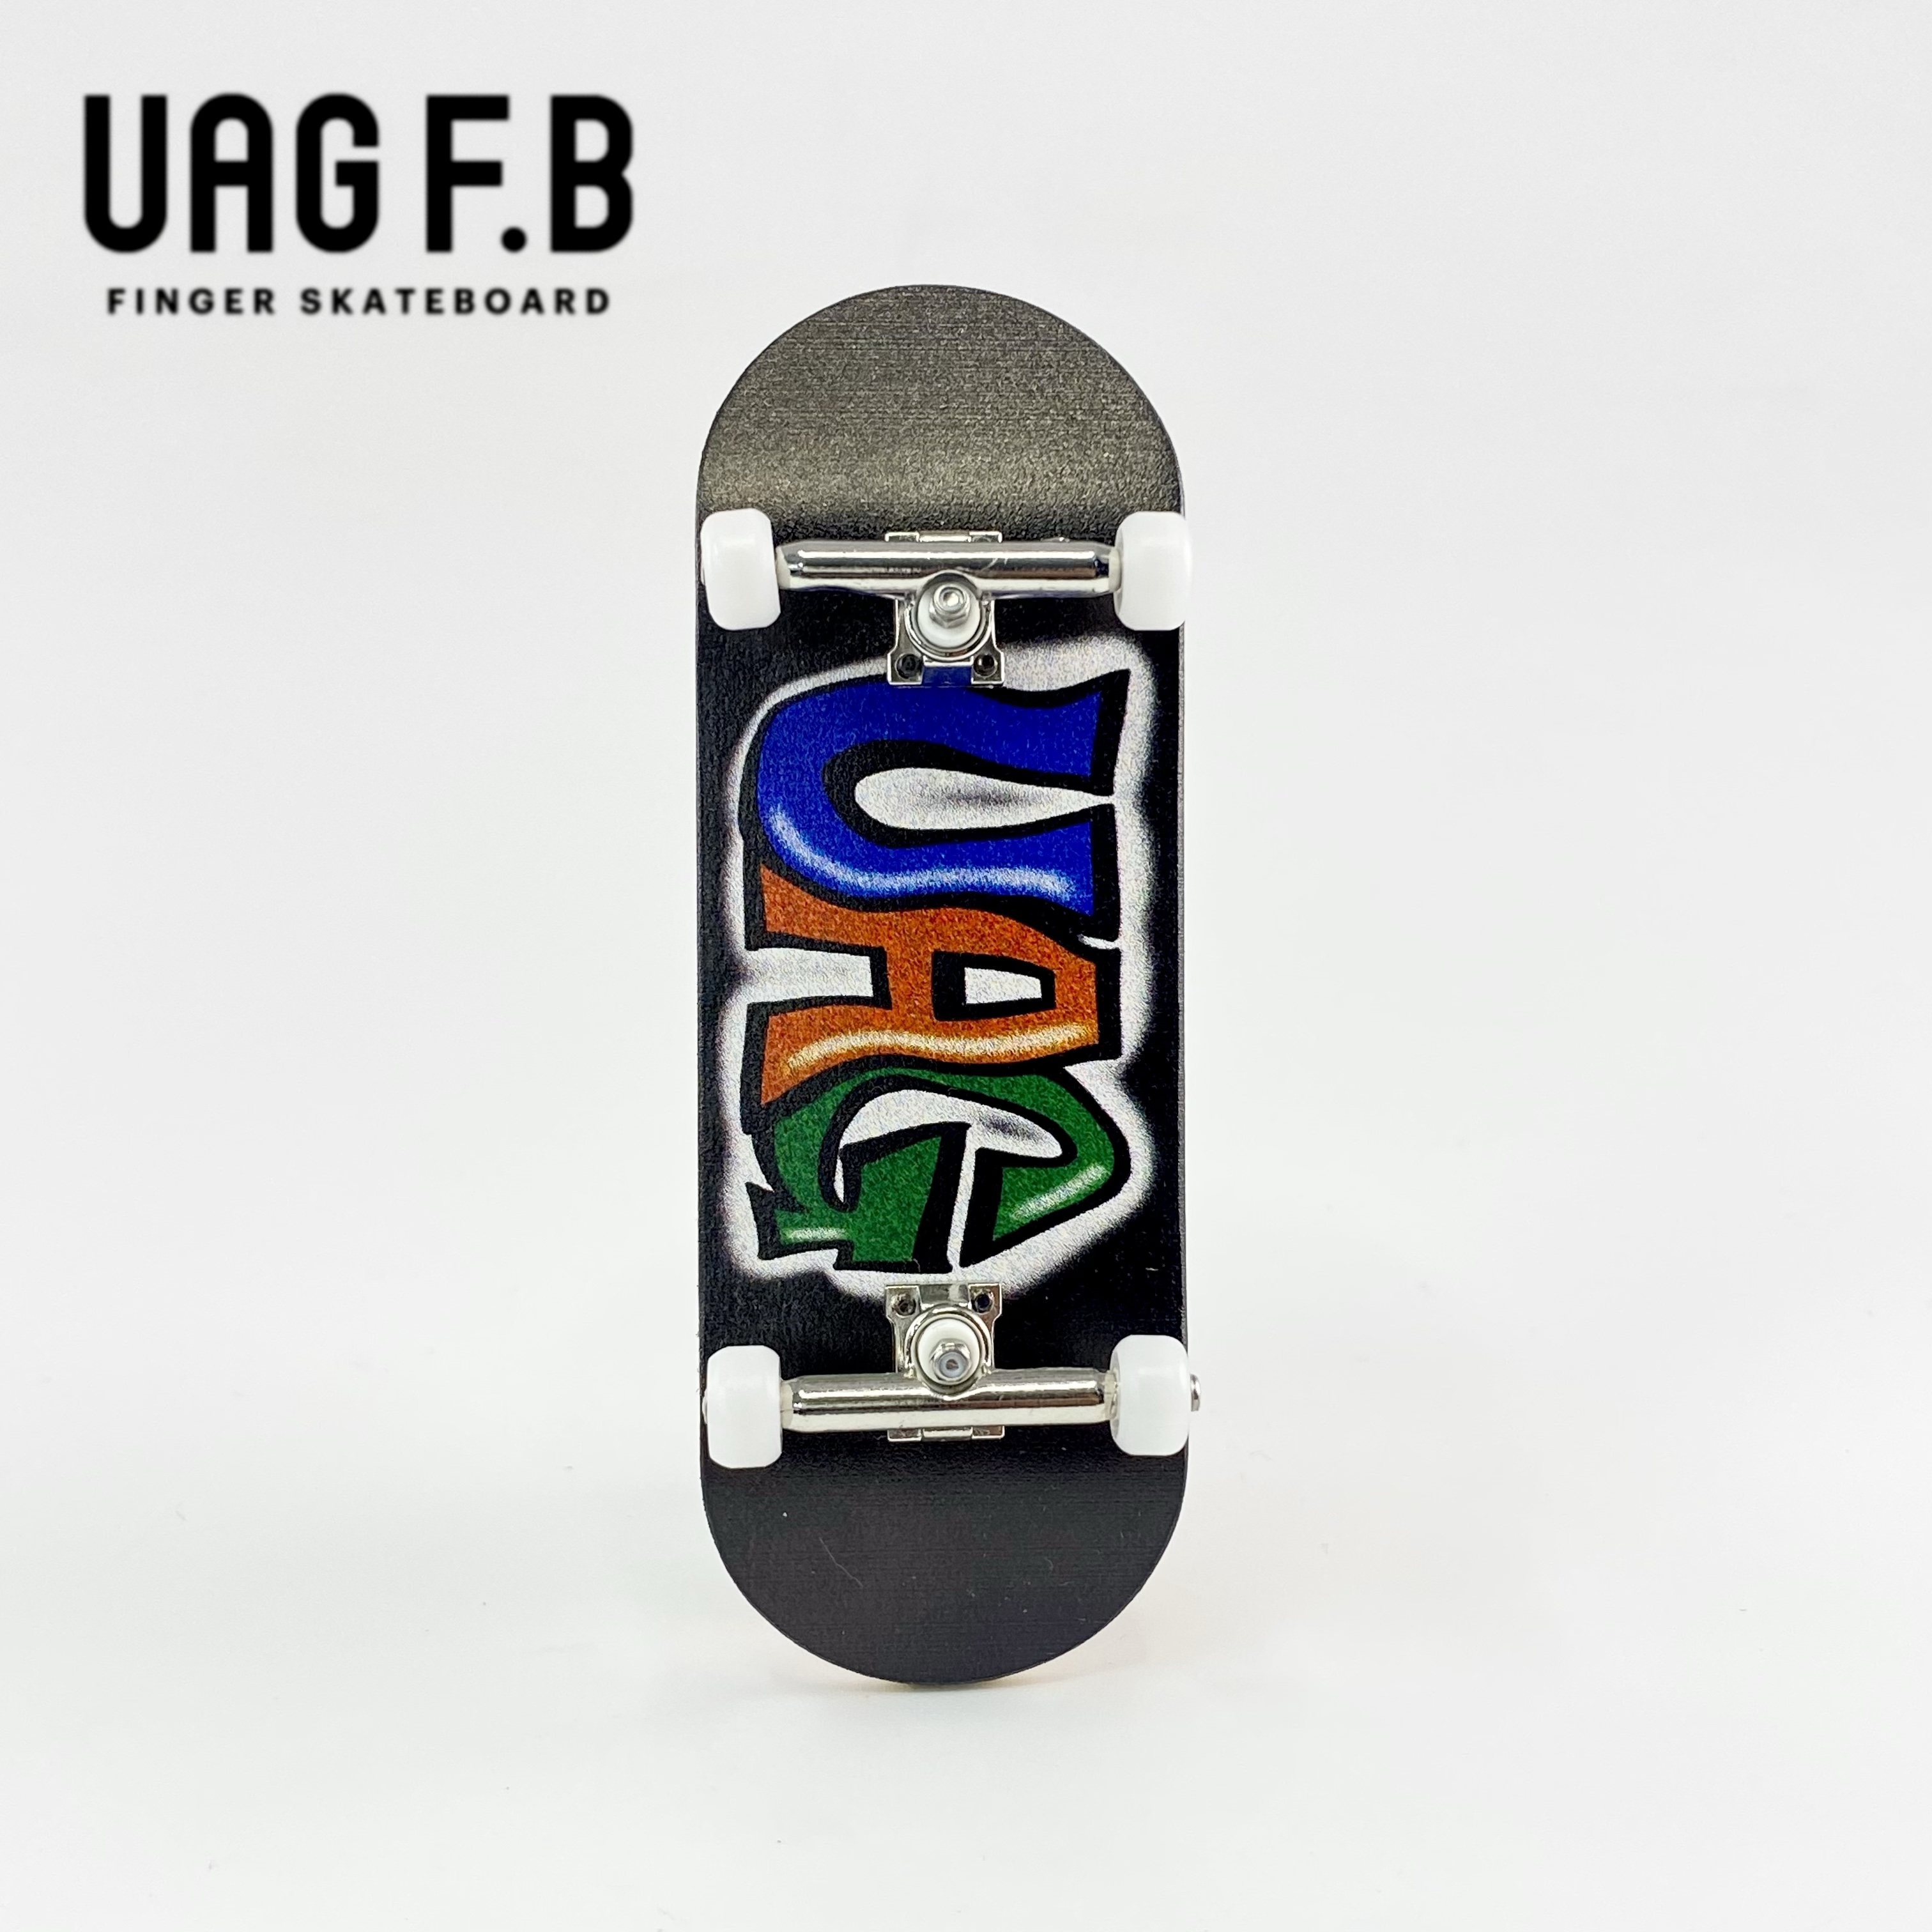 UAG F.B プロコンプリート / UAG-Black / finger skate board / 指スケ / 指スケボー